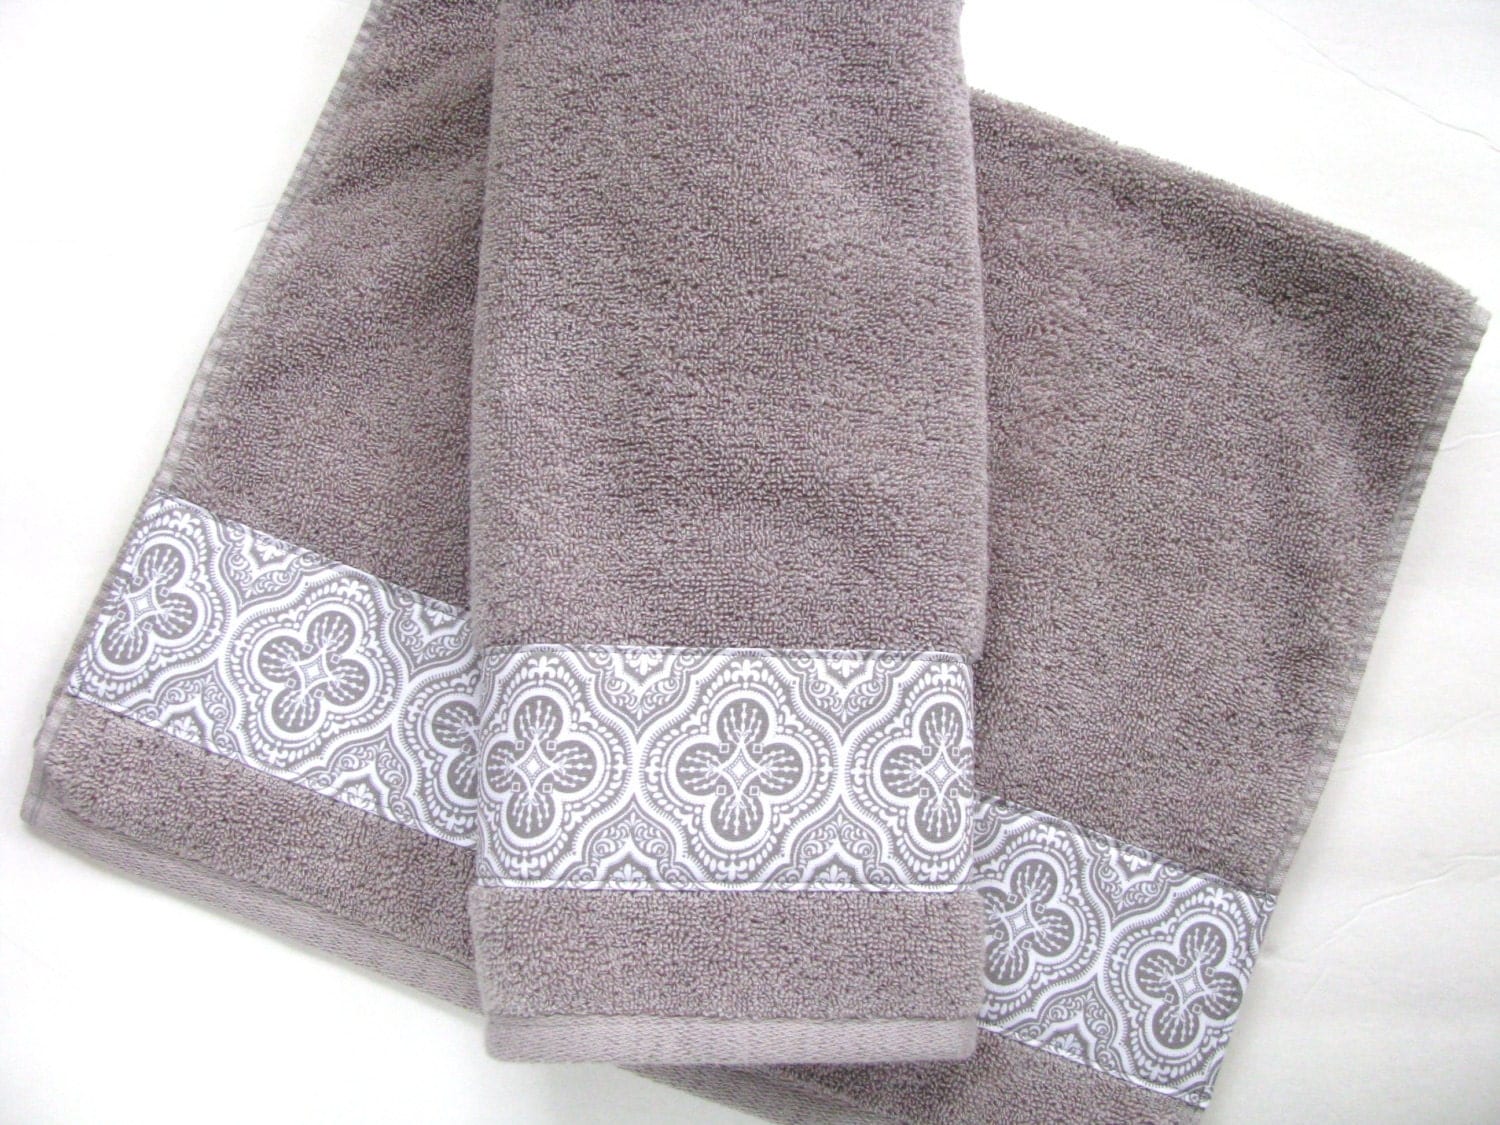  Grey  Towels  hand towels  towel  sets bath  towels  gray  bath 